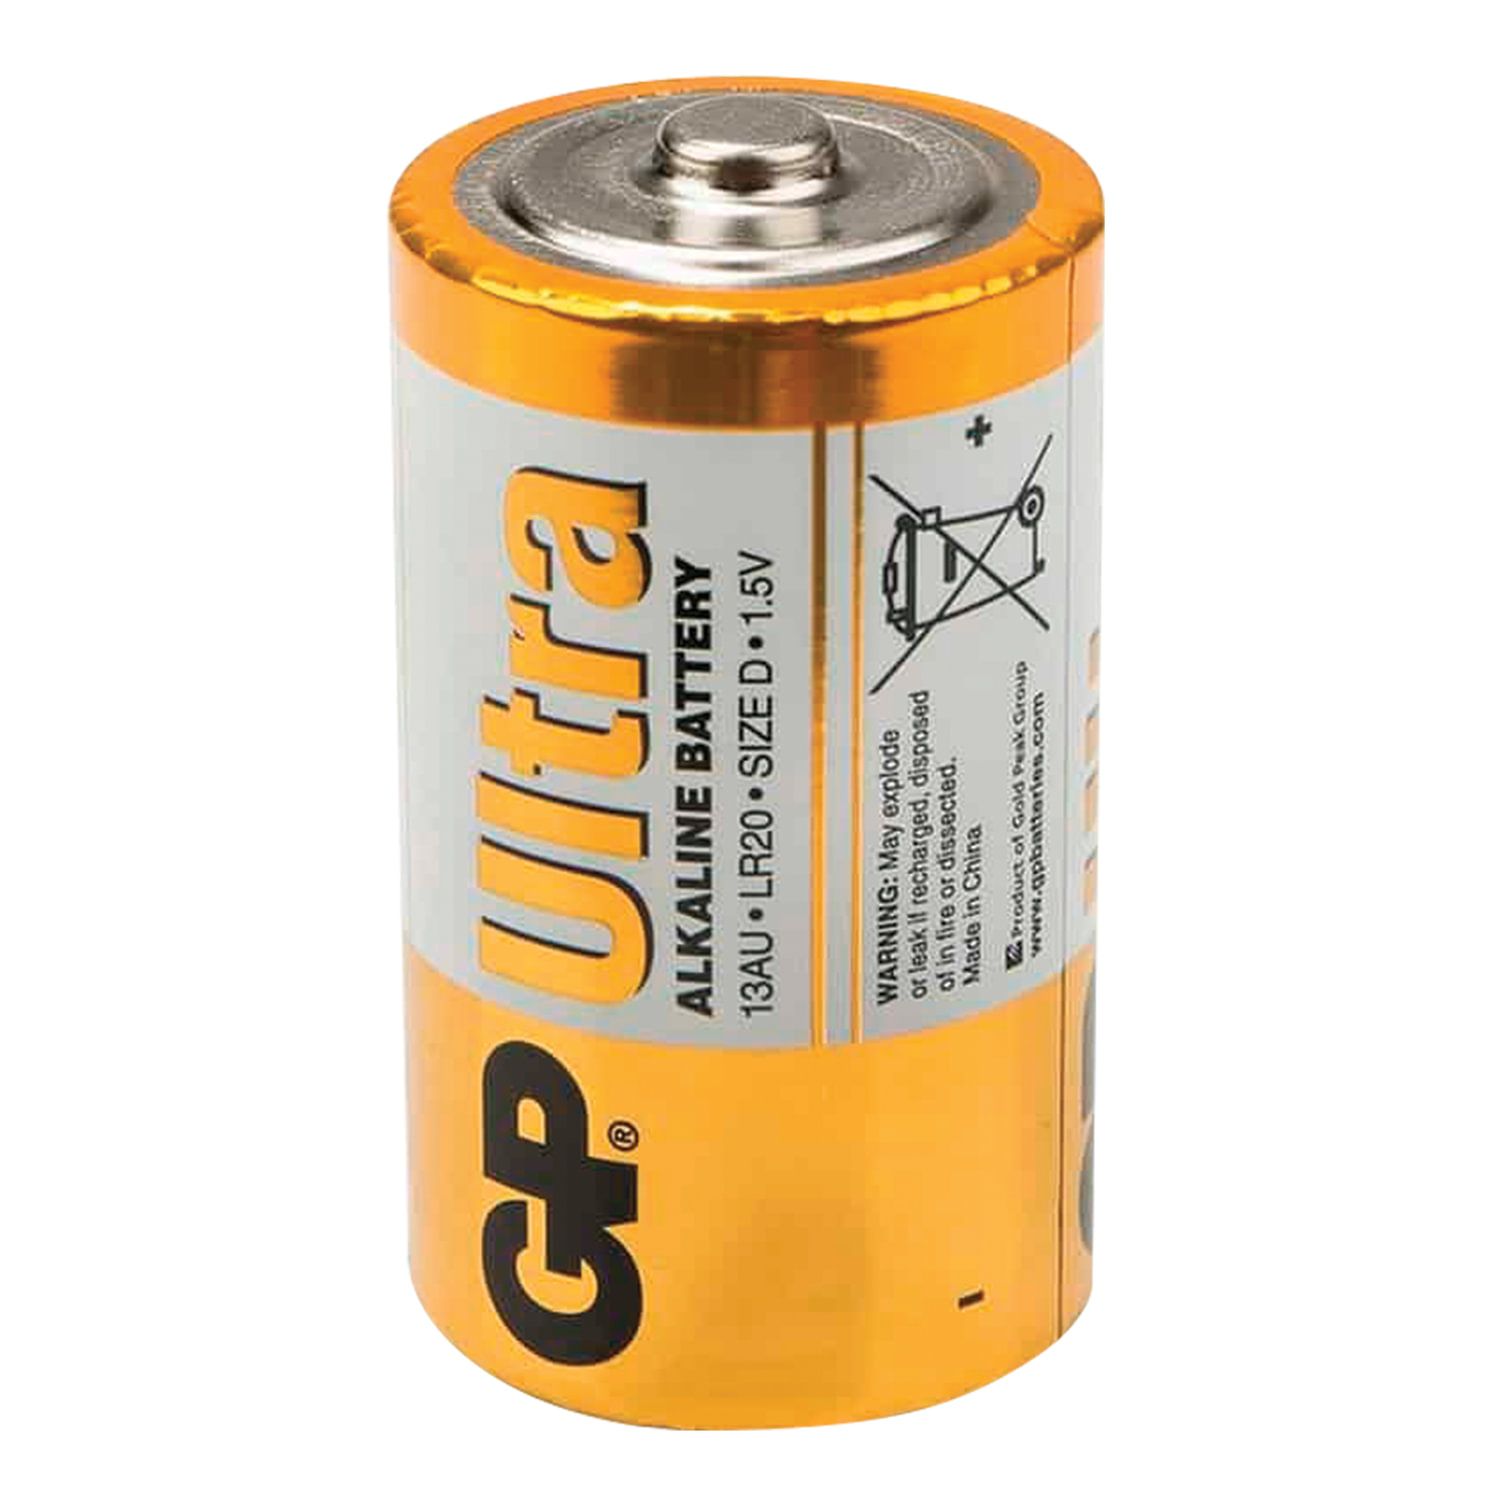 Батареи элементы питания. Батарейки GP Ultra lr20. Батарейка d lr20 1.5v. Батарейка 1 5v lr20 Alkaline. Батарейки GP super Alkaline d lr20 2шт 13a cr2.